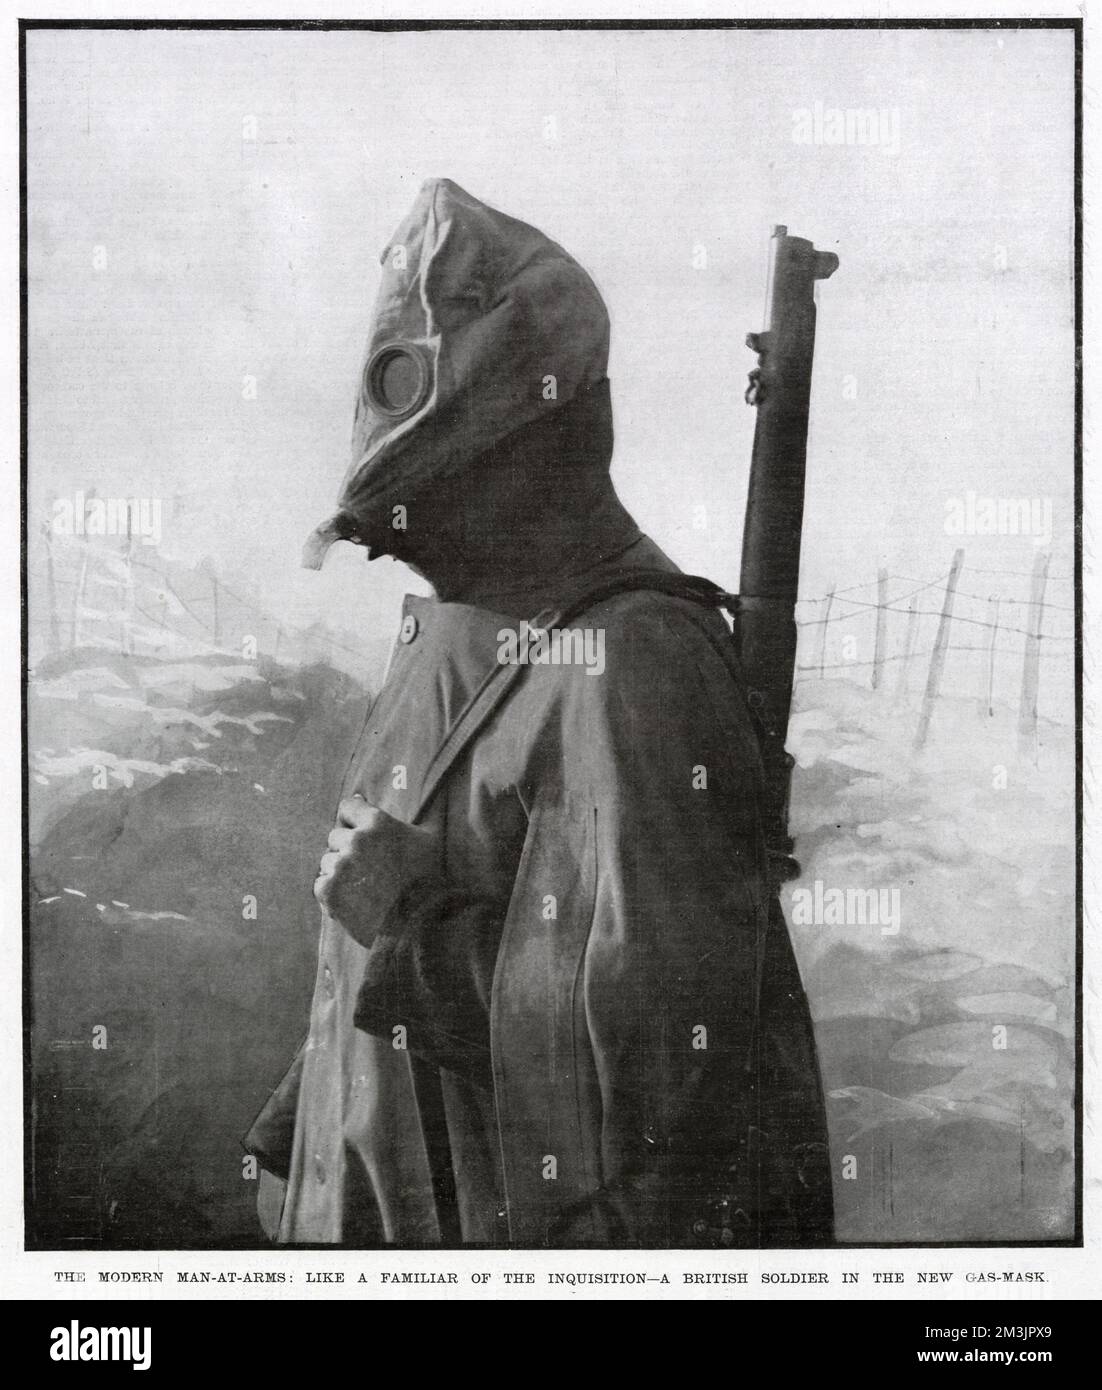 Un soldato britannico che indossa una nuova maschera a gas. A seguito dell'uso tedesco di gas velenoso a Ypres il 22nd aprile 1915, divenne una caratteristica comune della guerra mondiale, che richiedeva l'uso di maschere a gas tra i soldati di entrambi i lati. Foto Stock